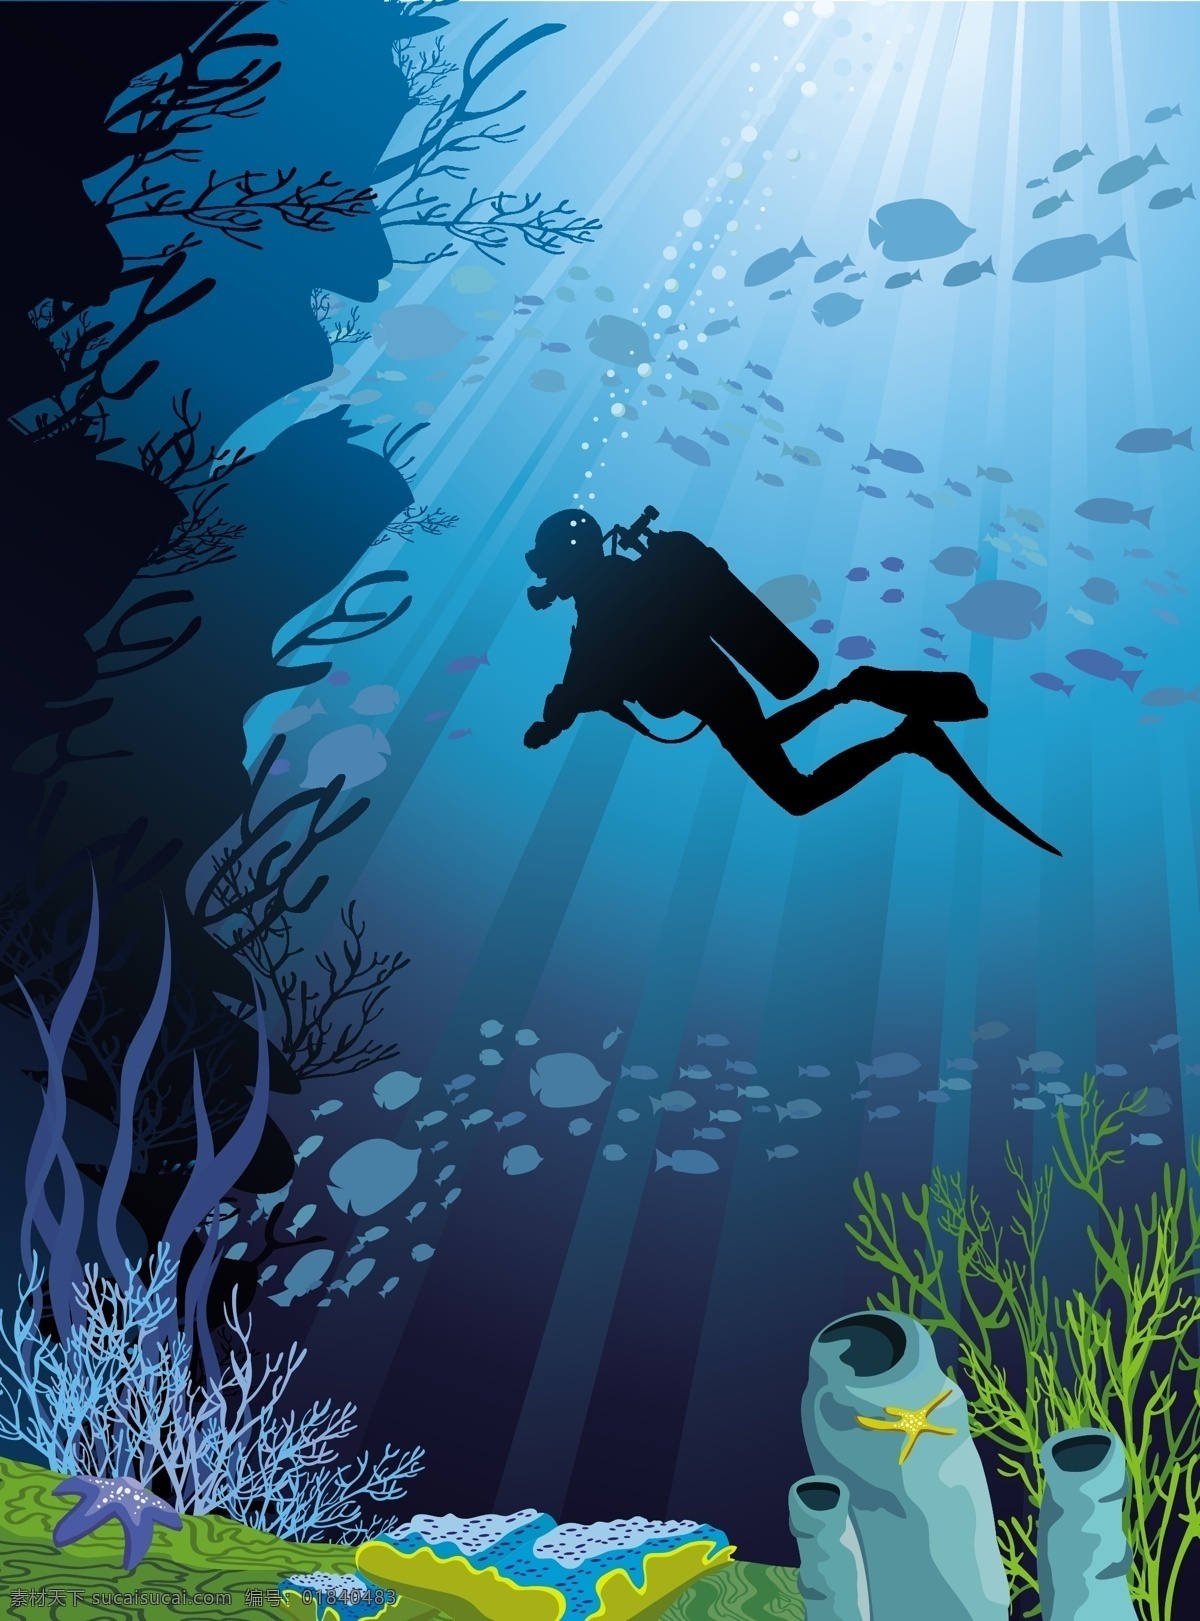 海底世界 海洋生物 手绘 鱼 海底 潜水员 鱼类 海底素材 大海 海水 鱼群 海底世界图片 珊瑚 海洋 生物世界